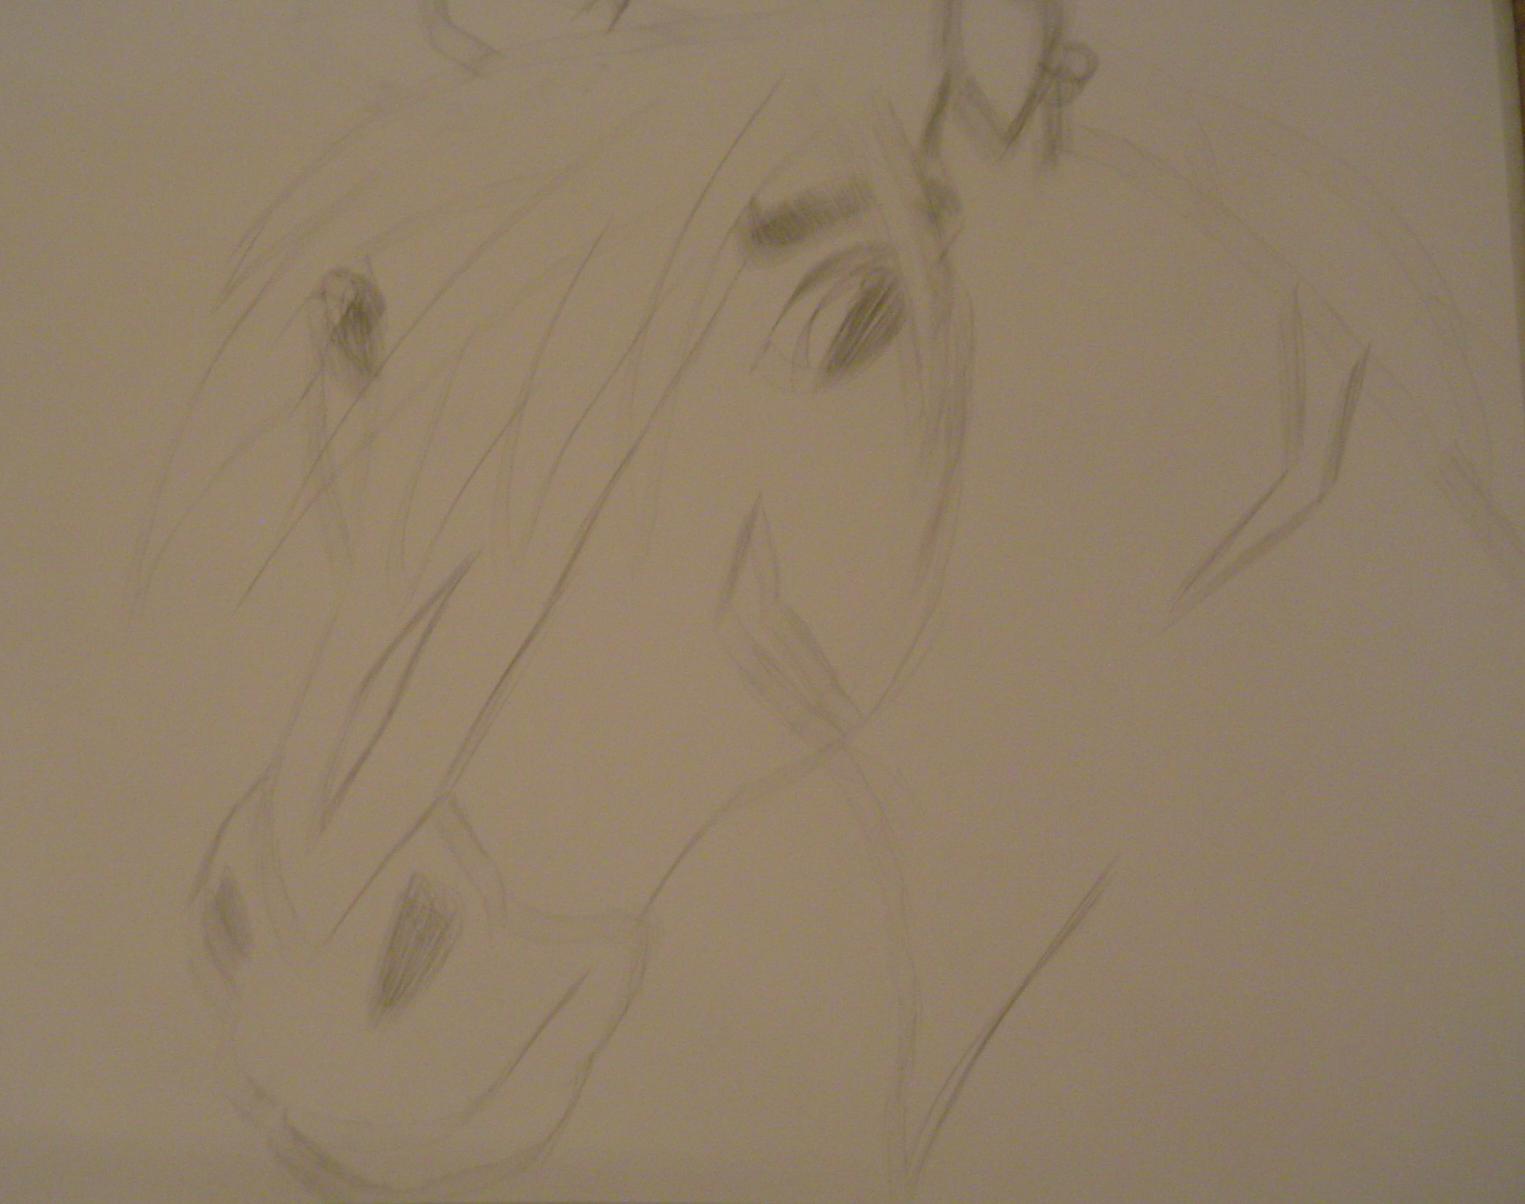 Horse by KaylaChick14